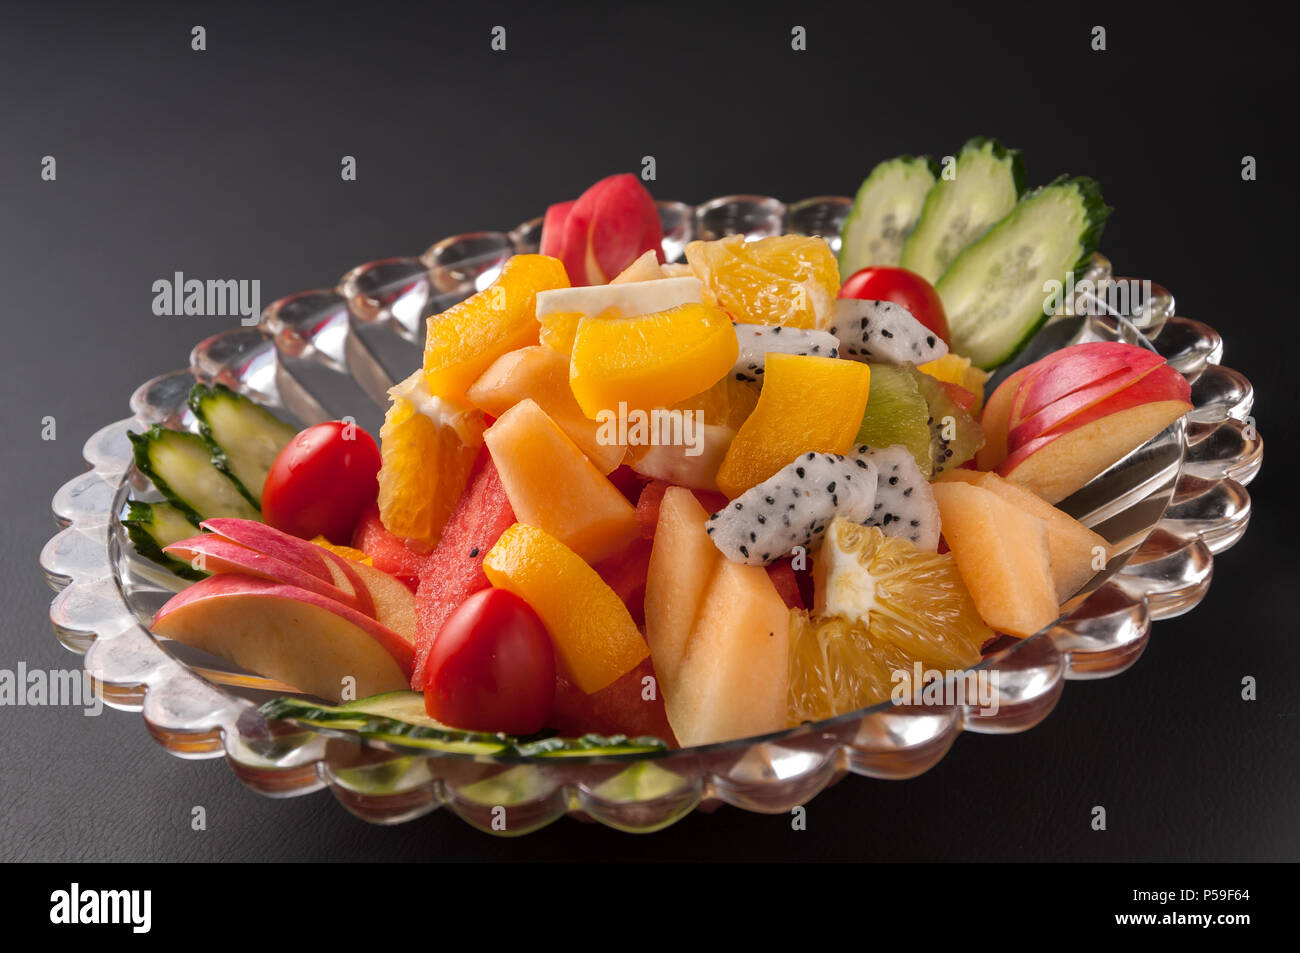 Colorido plato de frutas con sandía, melón, uvas, naranjas, fruta del dragón y menta Foto de stock